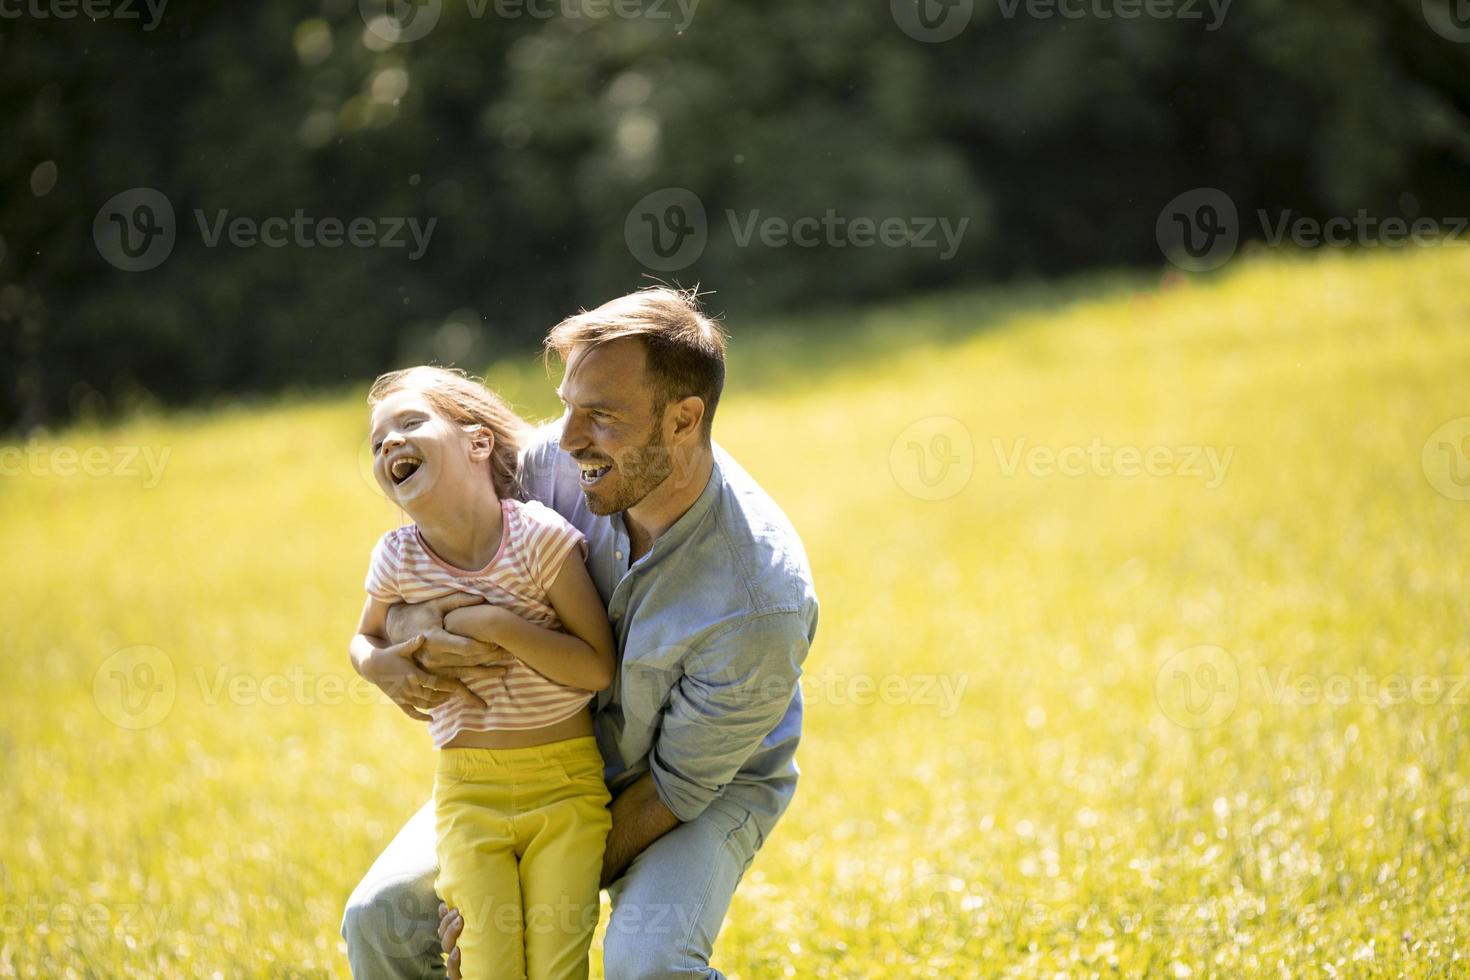 vader met dochter plezier op het gras in het park foto